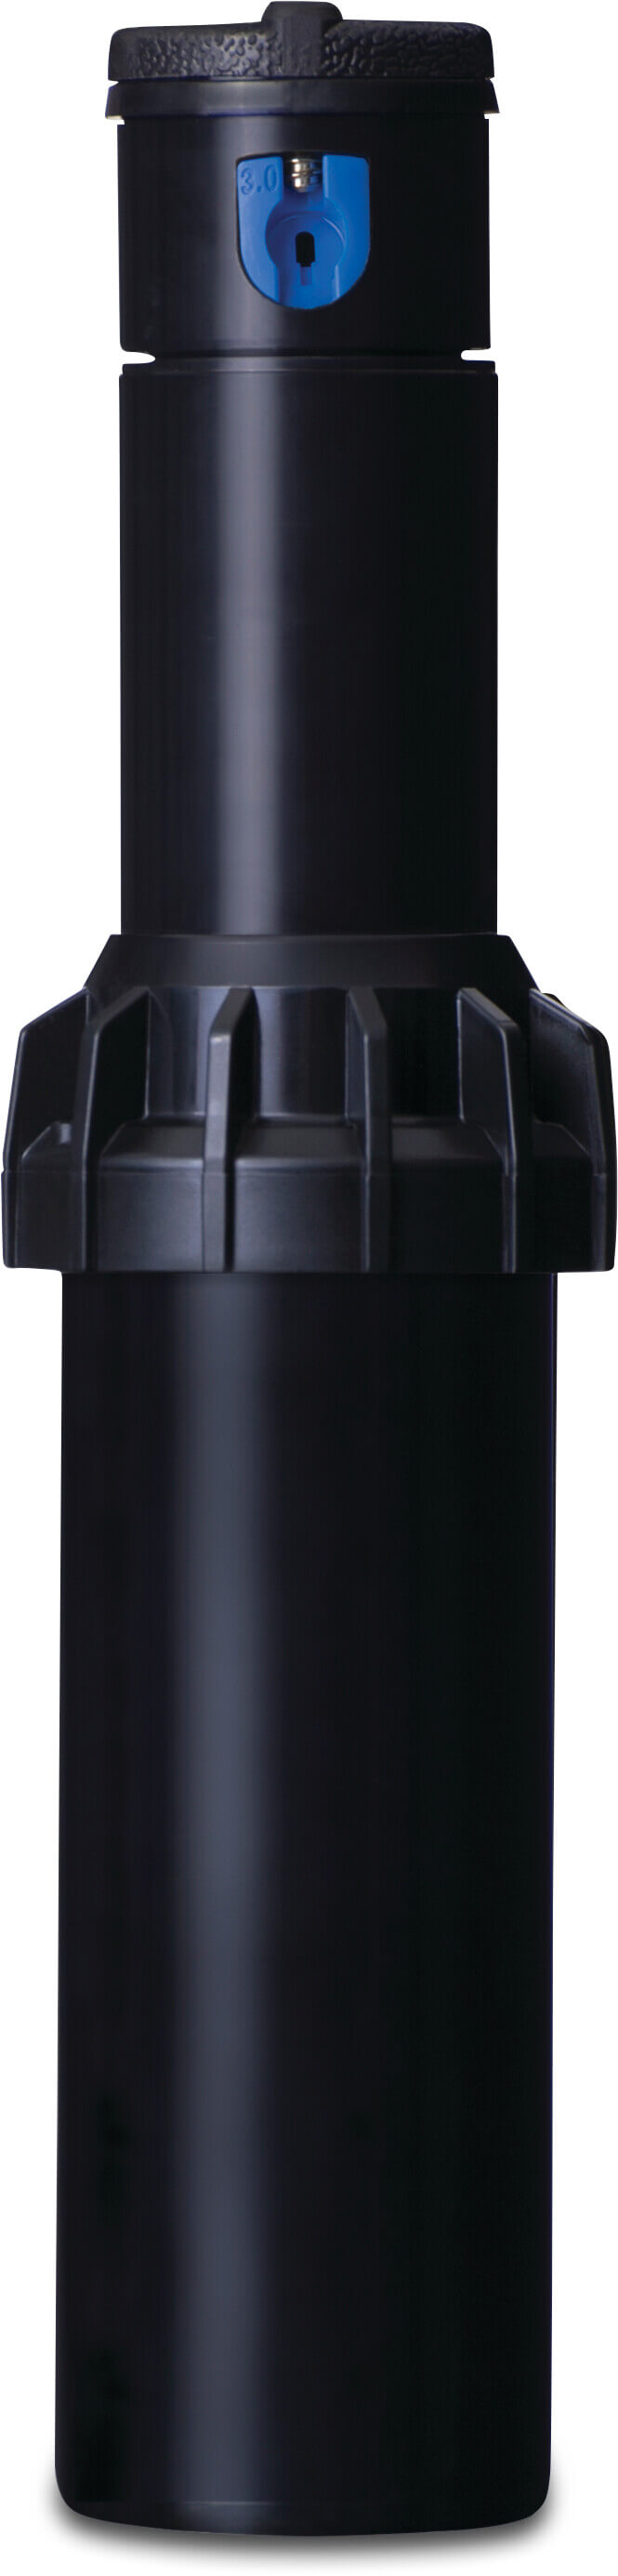 Hunter Pop-up sprinkler plastic 3/4" female thread 50°-360° black type I-20-04